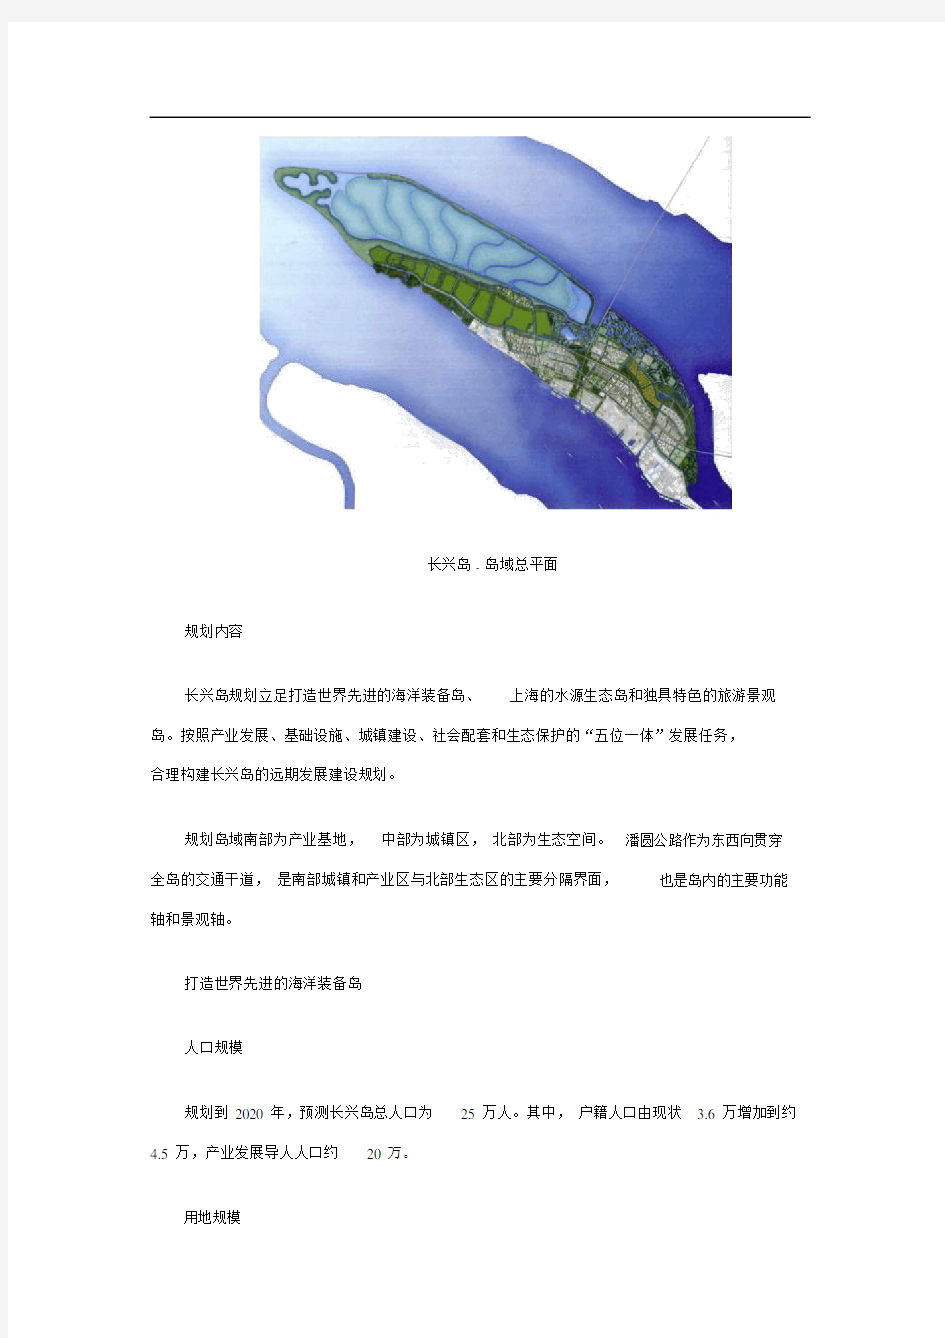 上海市长兴岛岛域总体规划(2008-2020)